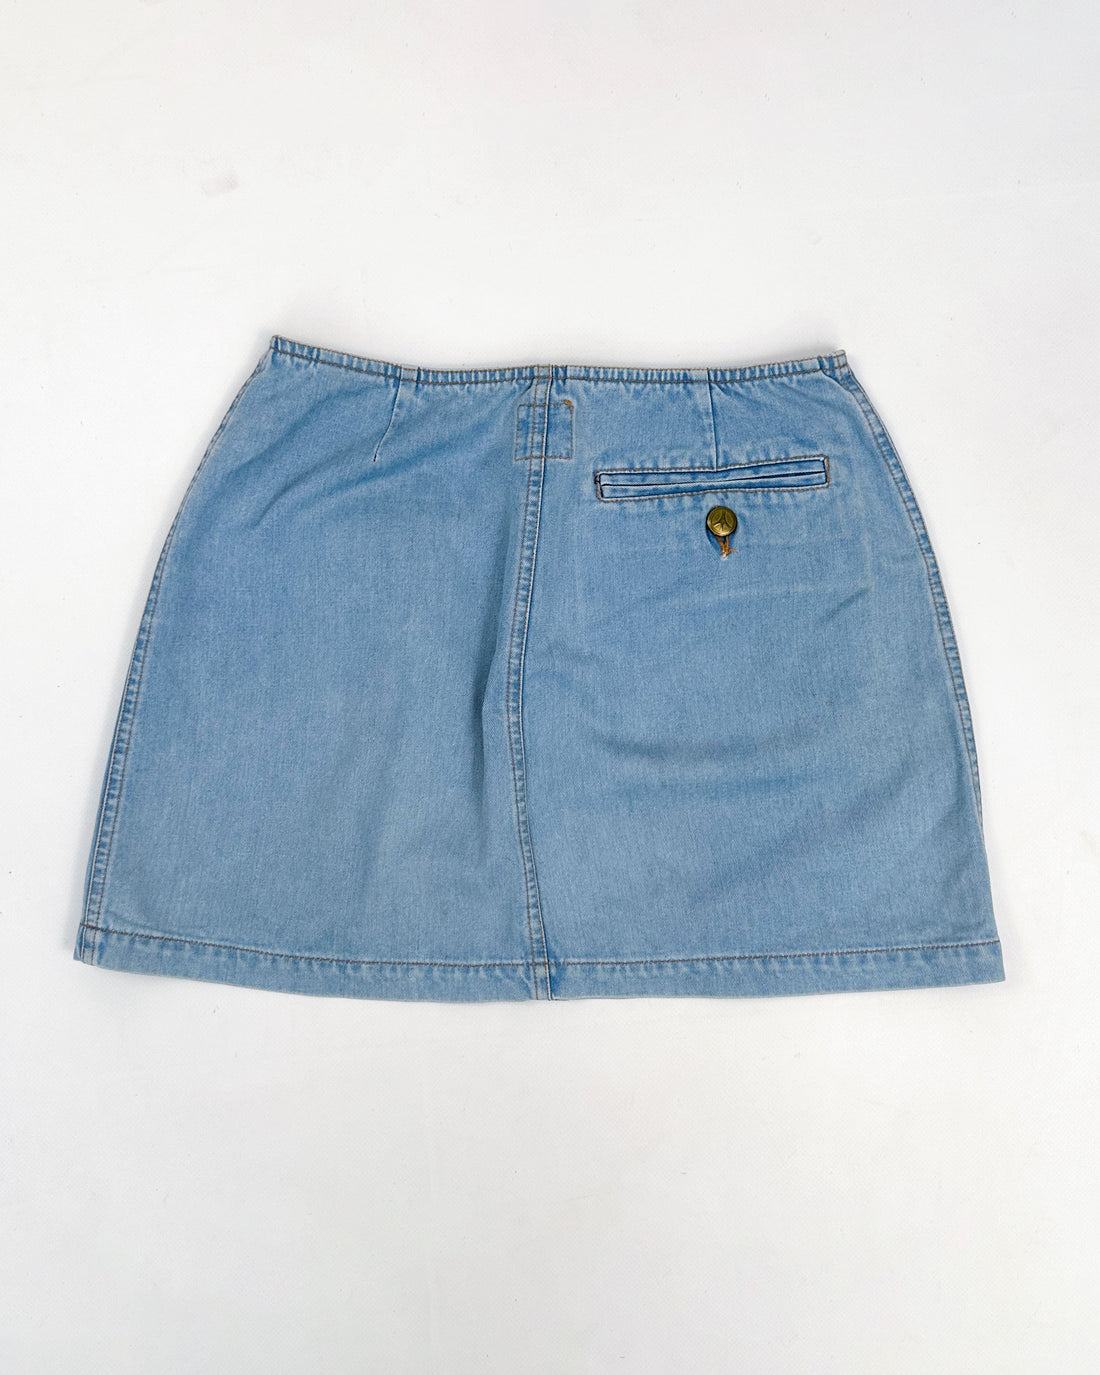 Moschino Denim Zipped Skirt 2000's